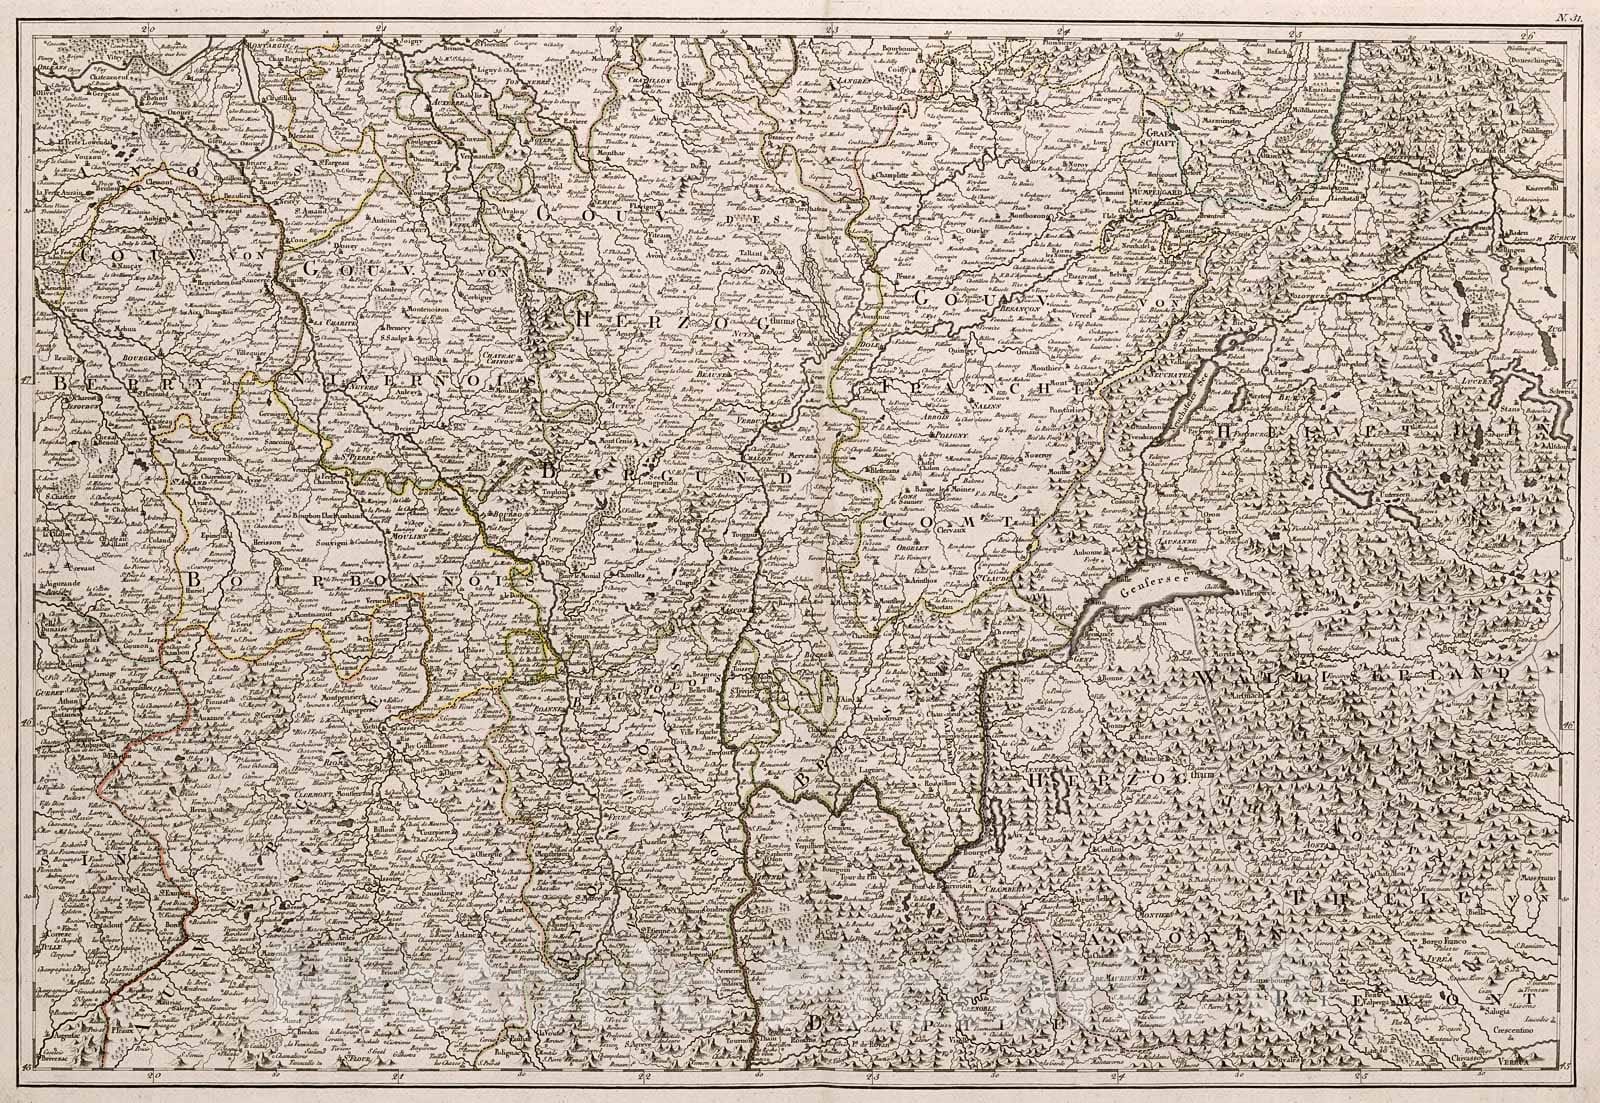 Historic Map : Neueste Generalkarte von Frankreich (central eastern sheet)., 1800, Vintage Wall Decor